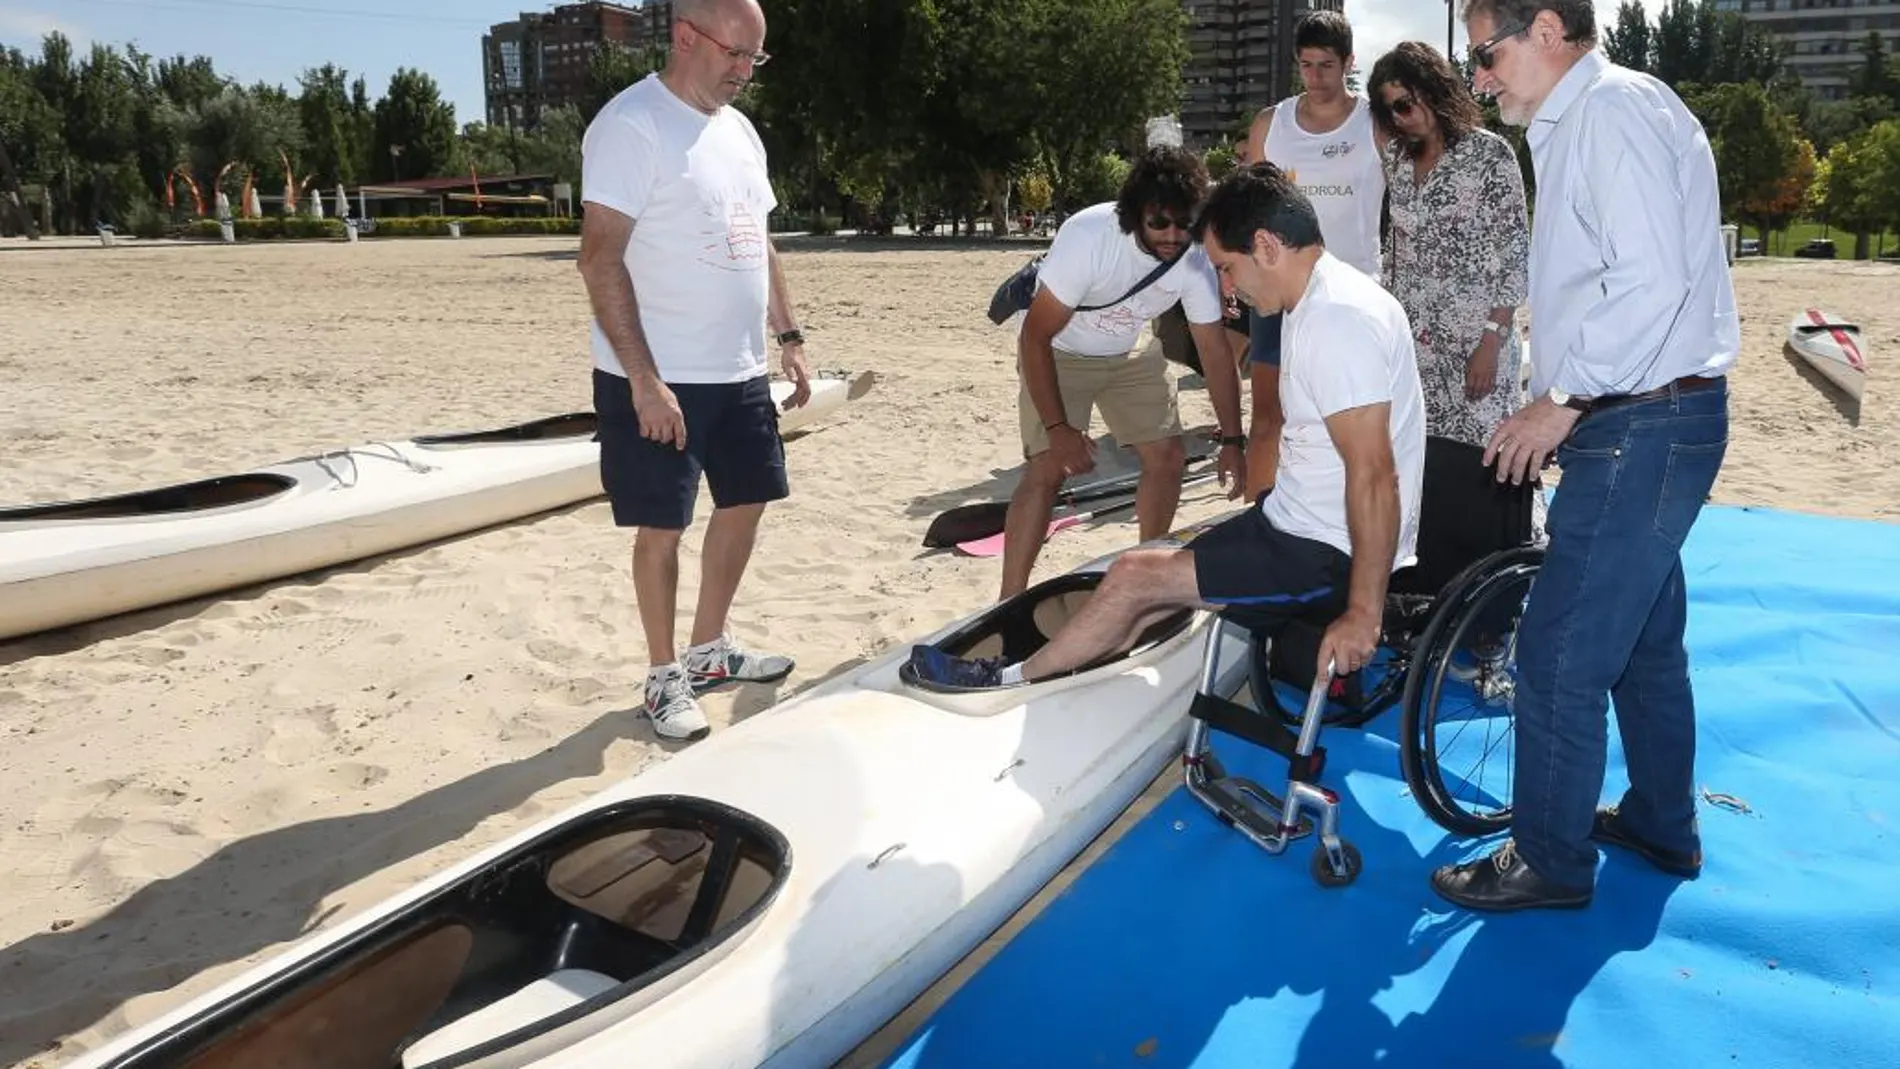 Integrantes de Aspaym comienzan con la experiencia piloto de piragüismo adaptado en la playa de Valladolid